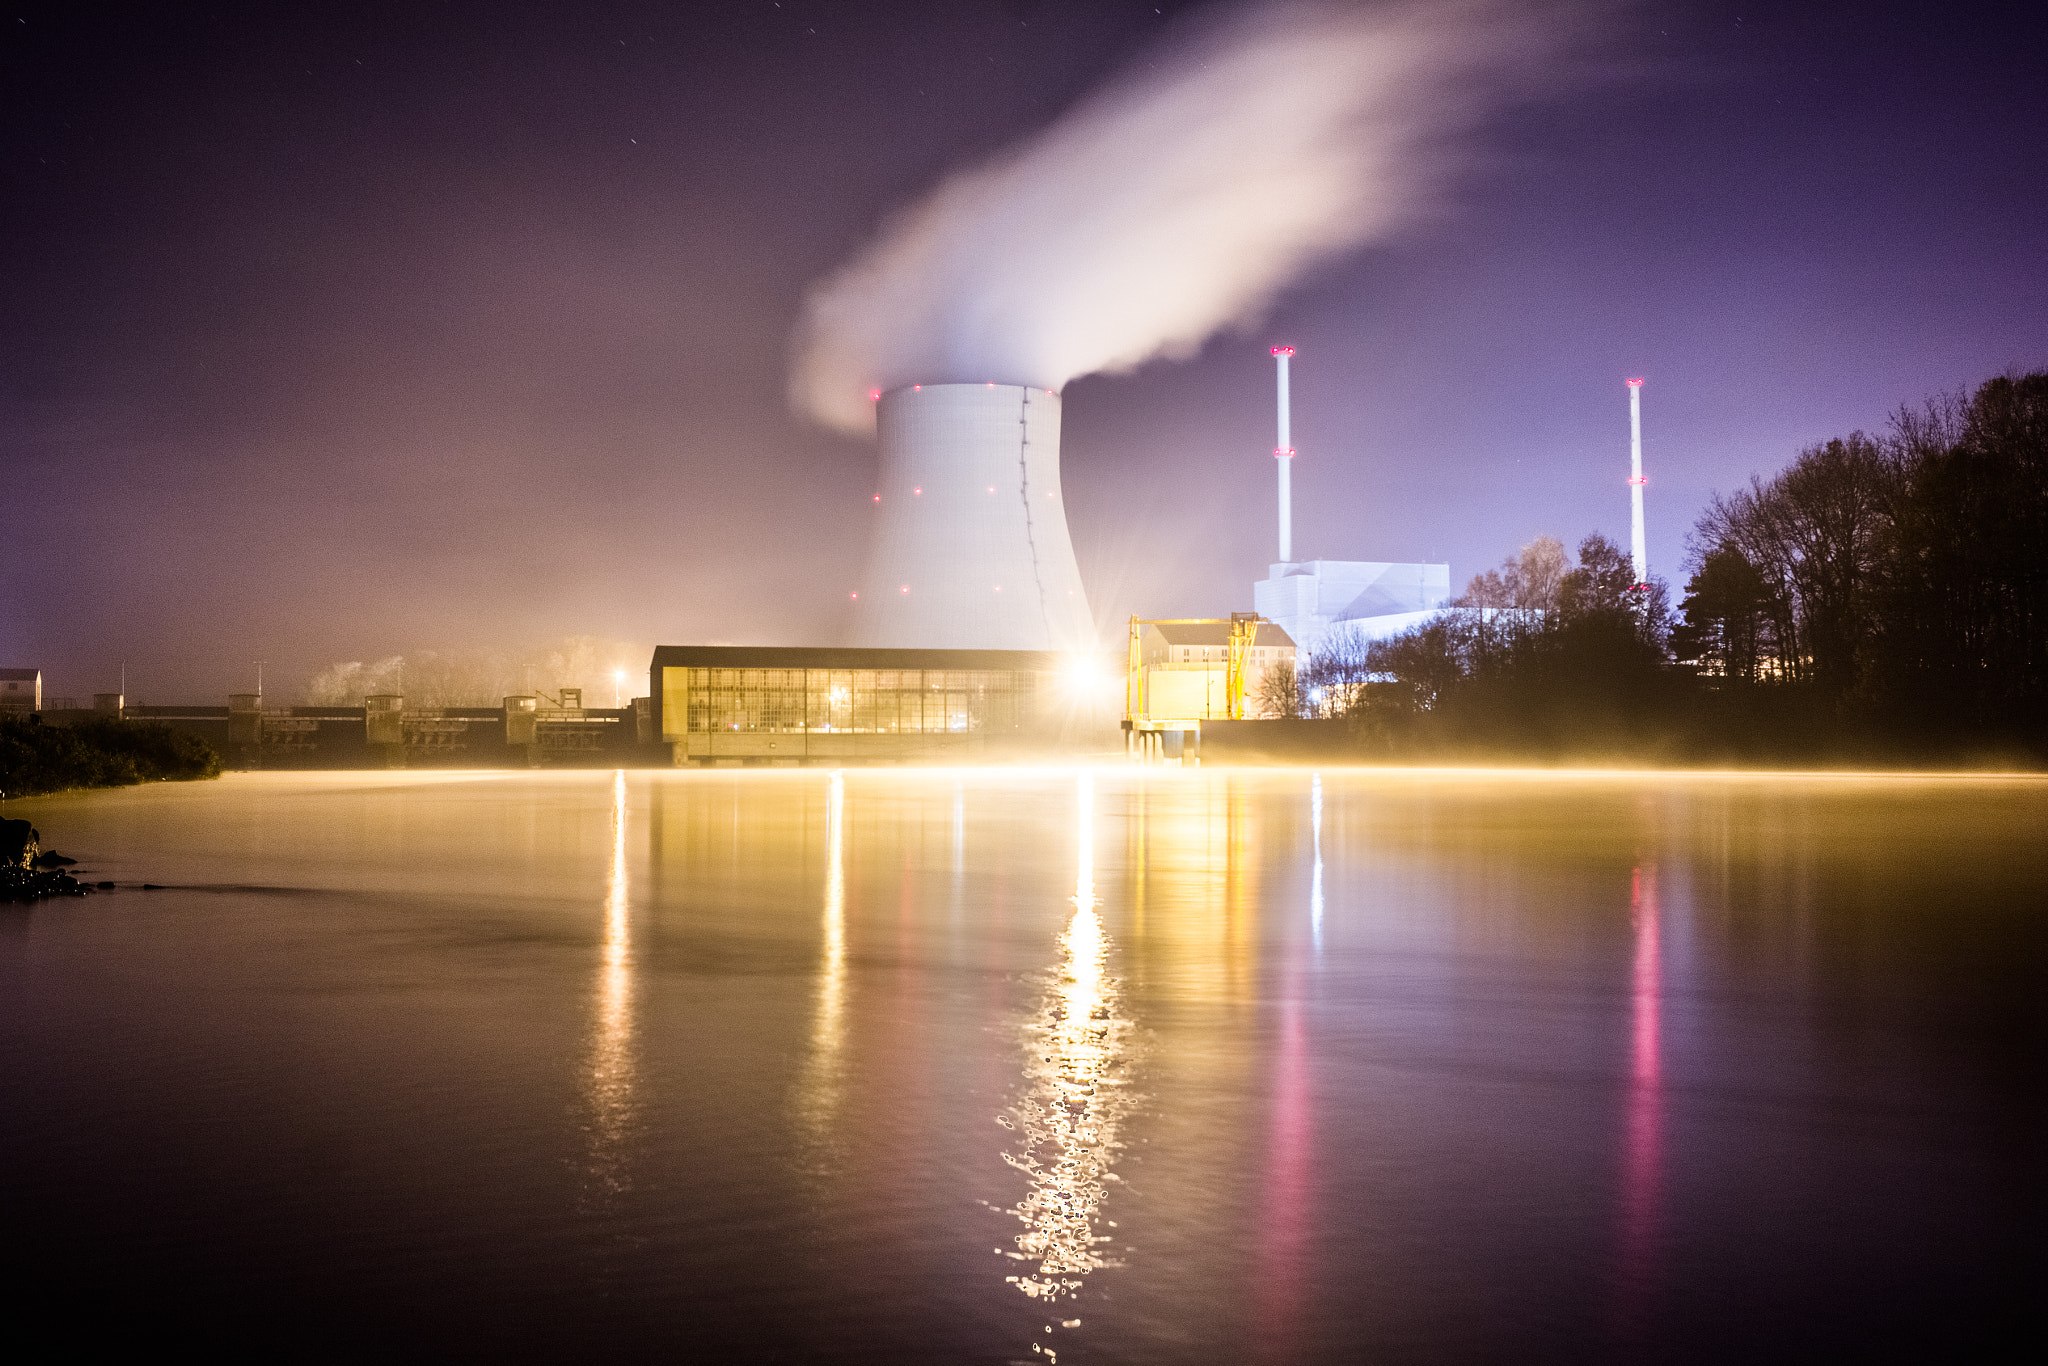 Bild: Dennis Hansch, Kernkraftwerk Isar (184462319), CC BY 3.0, via Wikimedia Commons, (keine Änderungen vorgenommen)